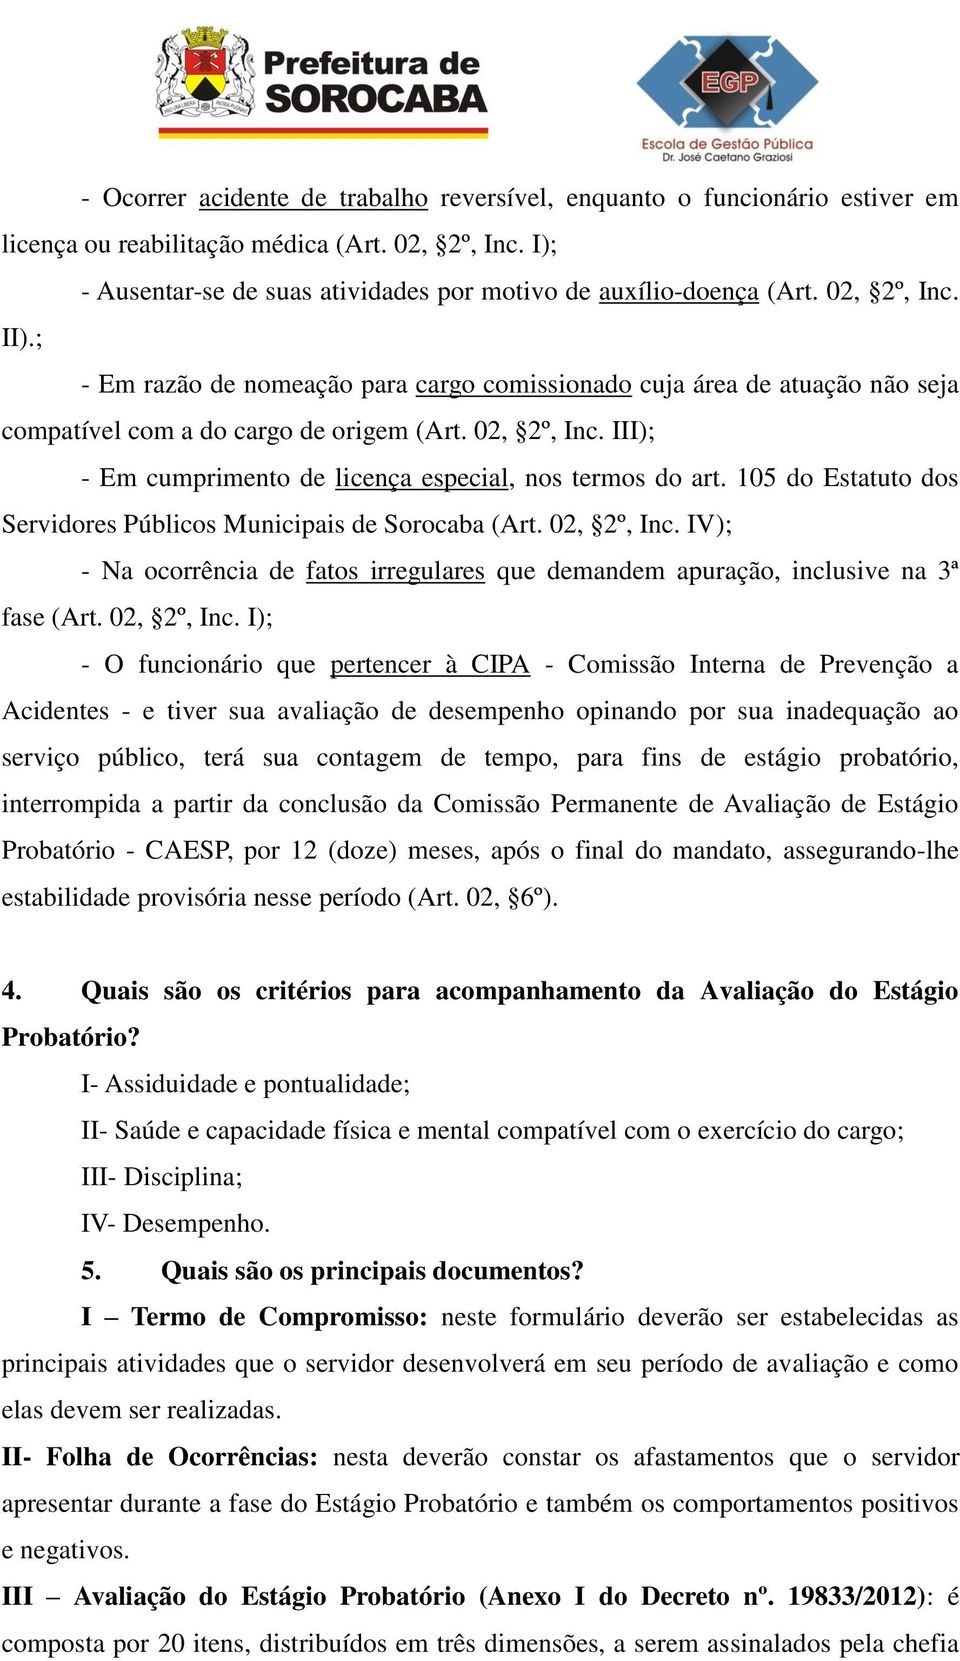 III); - Em cumprimento de licença especial, nos termos do art. 105 do Estatuto dos Servidores Públicos Municipais de Sorocaba (Art. 02, 2º, Inc.